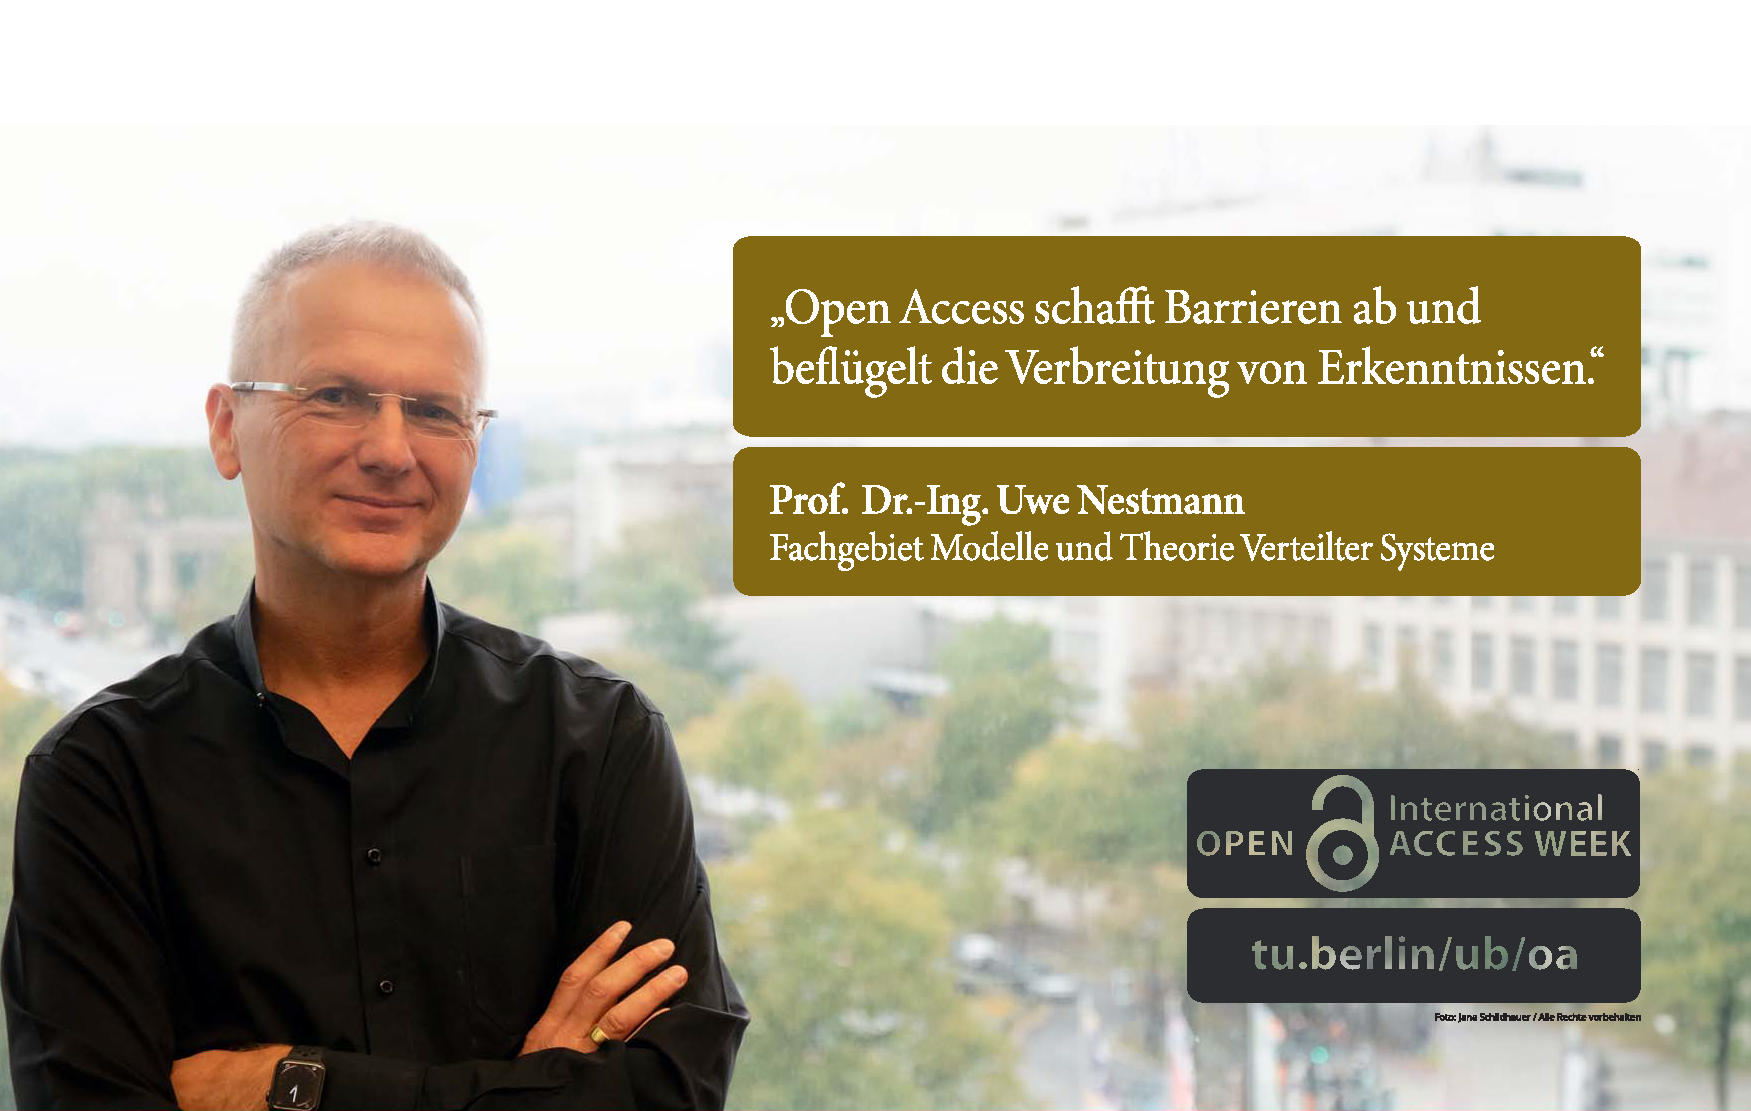 Foto von Prof. Dr.-Ing. Uwe Nestmann (Fachgebiet Modelle und Theorie Verteilter System) und sein Zitat "Open Access schafft Barrieren ab und beflügelt die Verbreitung von Erkenntnissen."